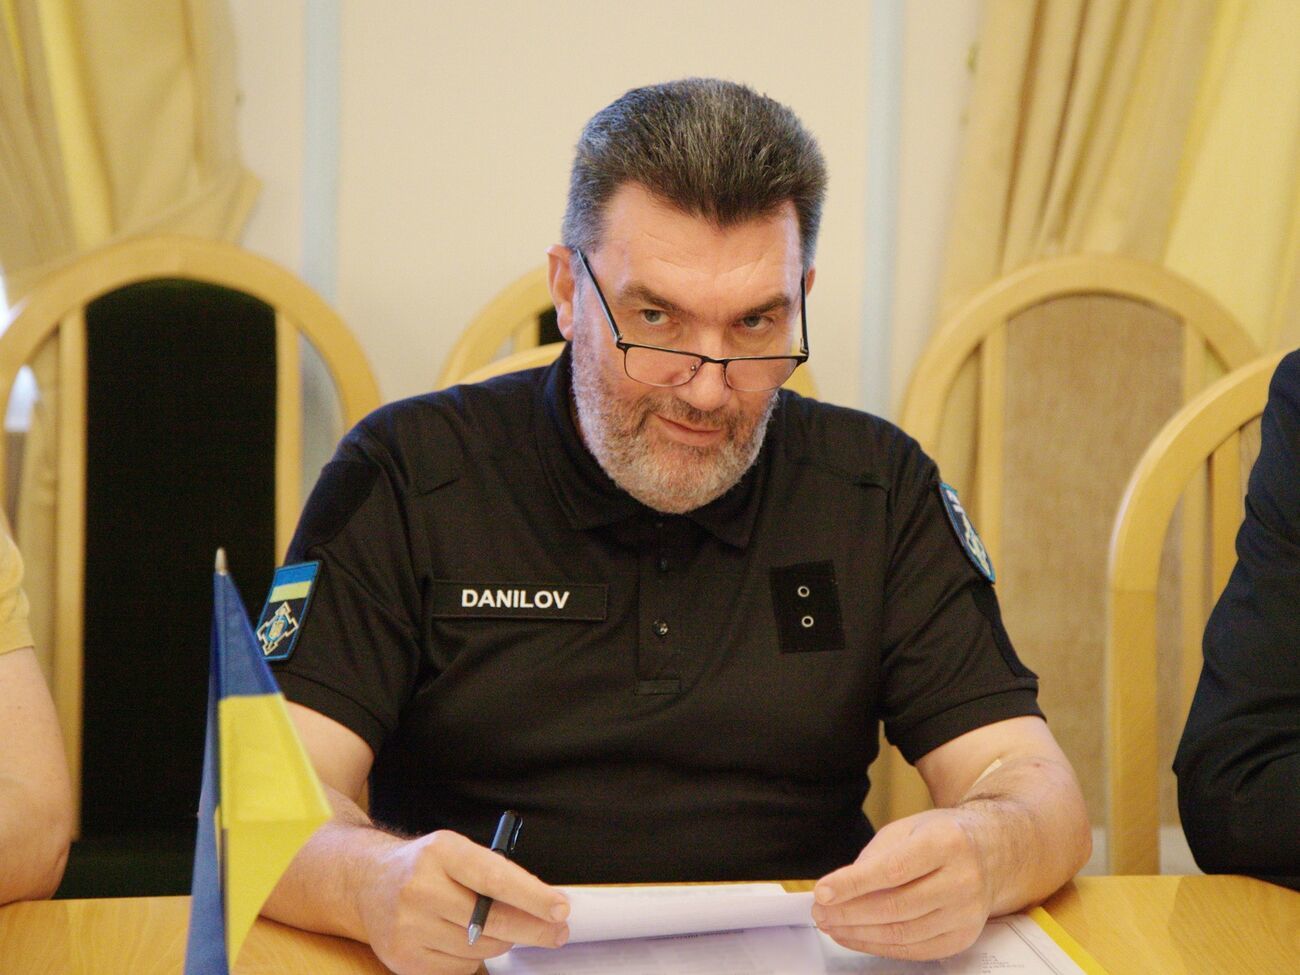 ​"Года-года…" – Данилов озвучил свой прогноз окончания войны в Украине